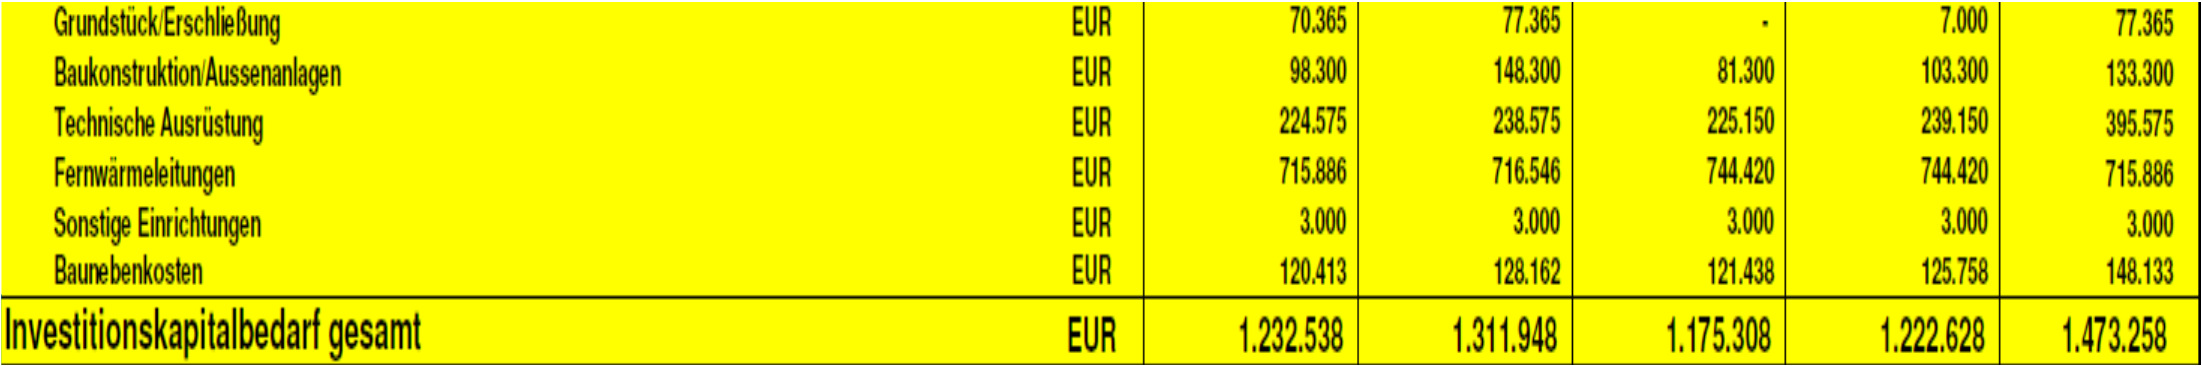 Investitionskosten Der Investitionskapitalbedarf für - Heizzentrale - Nahwärmenetz - Hausanschlüsse /Nahwärmeübergabestation beläuft sich der Schätzung nach auf ca. 1.175 T bis 1.